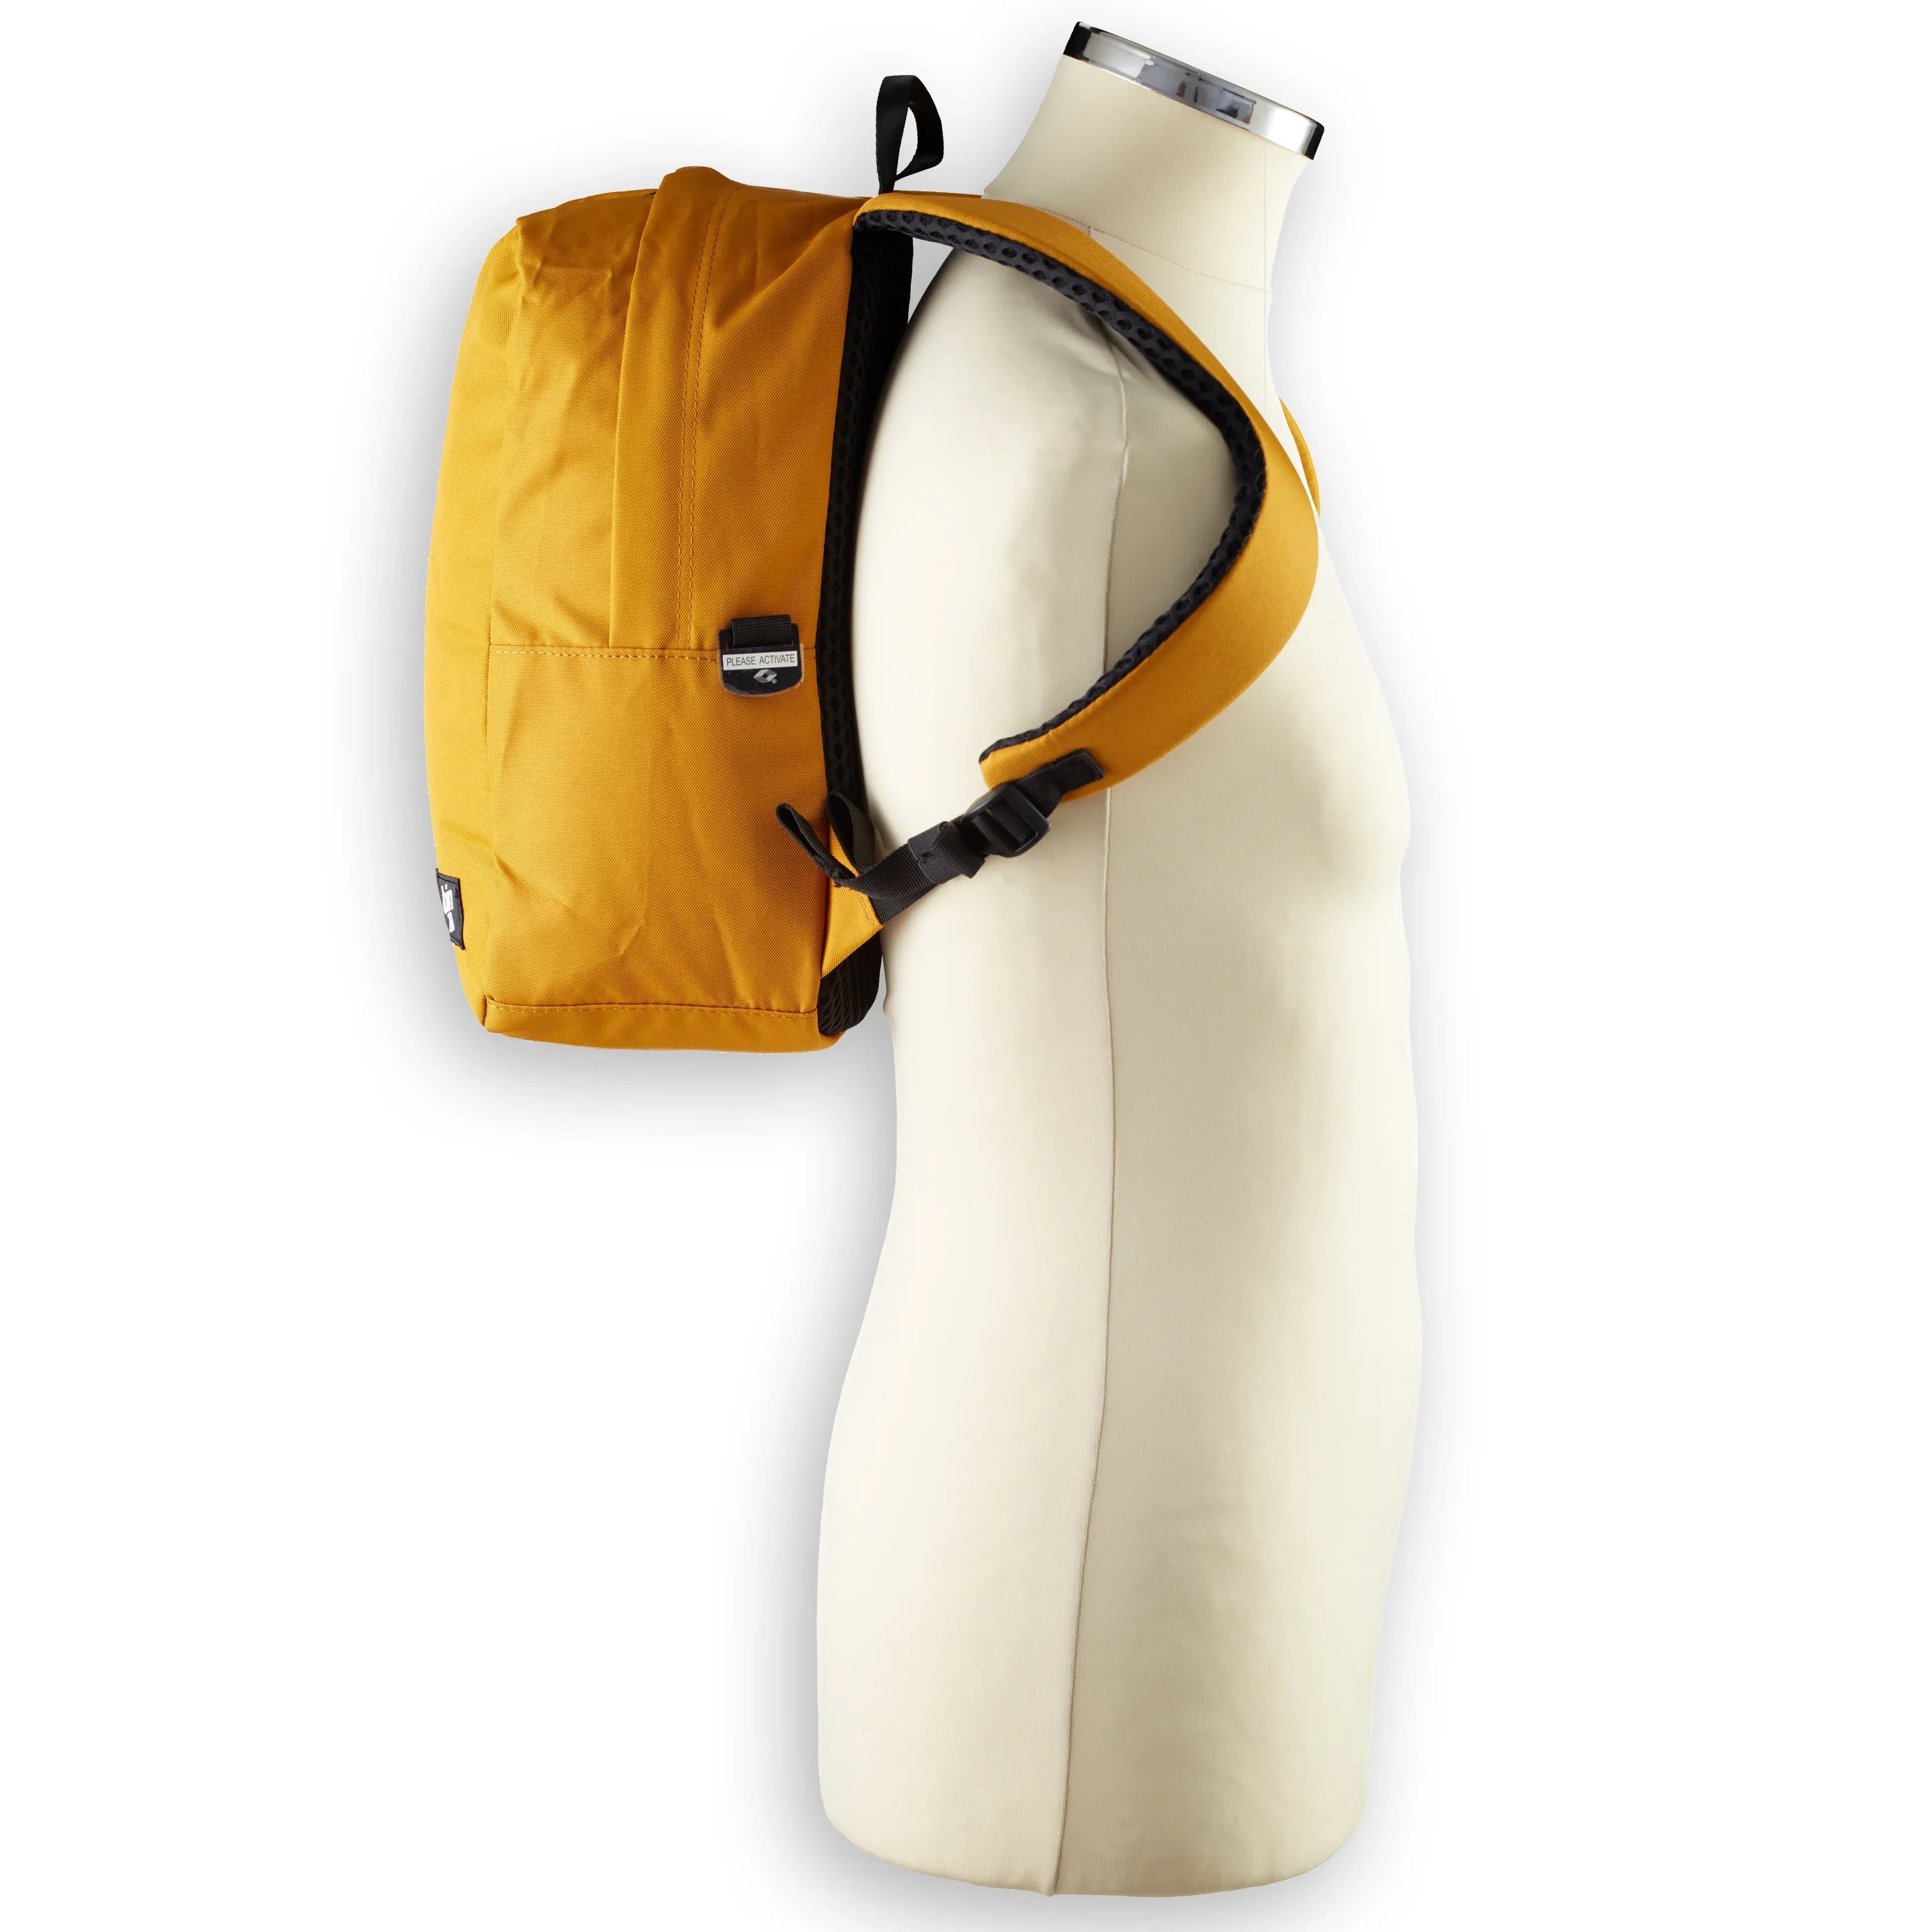 CabinZero Companion Bags Classic Flight 12L Backpack 34 cm - orange chill